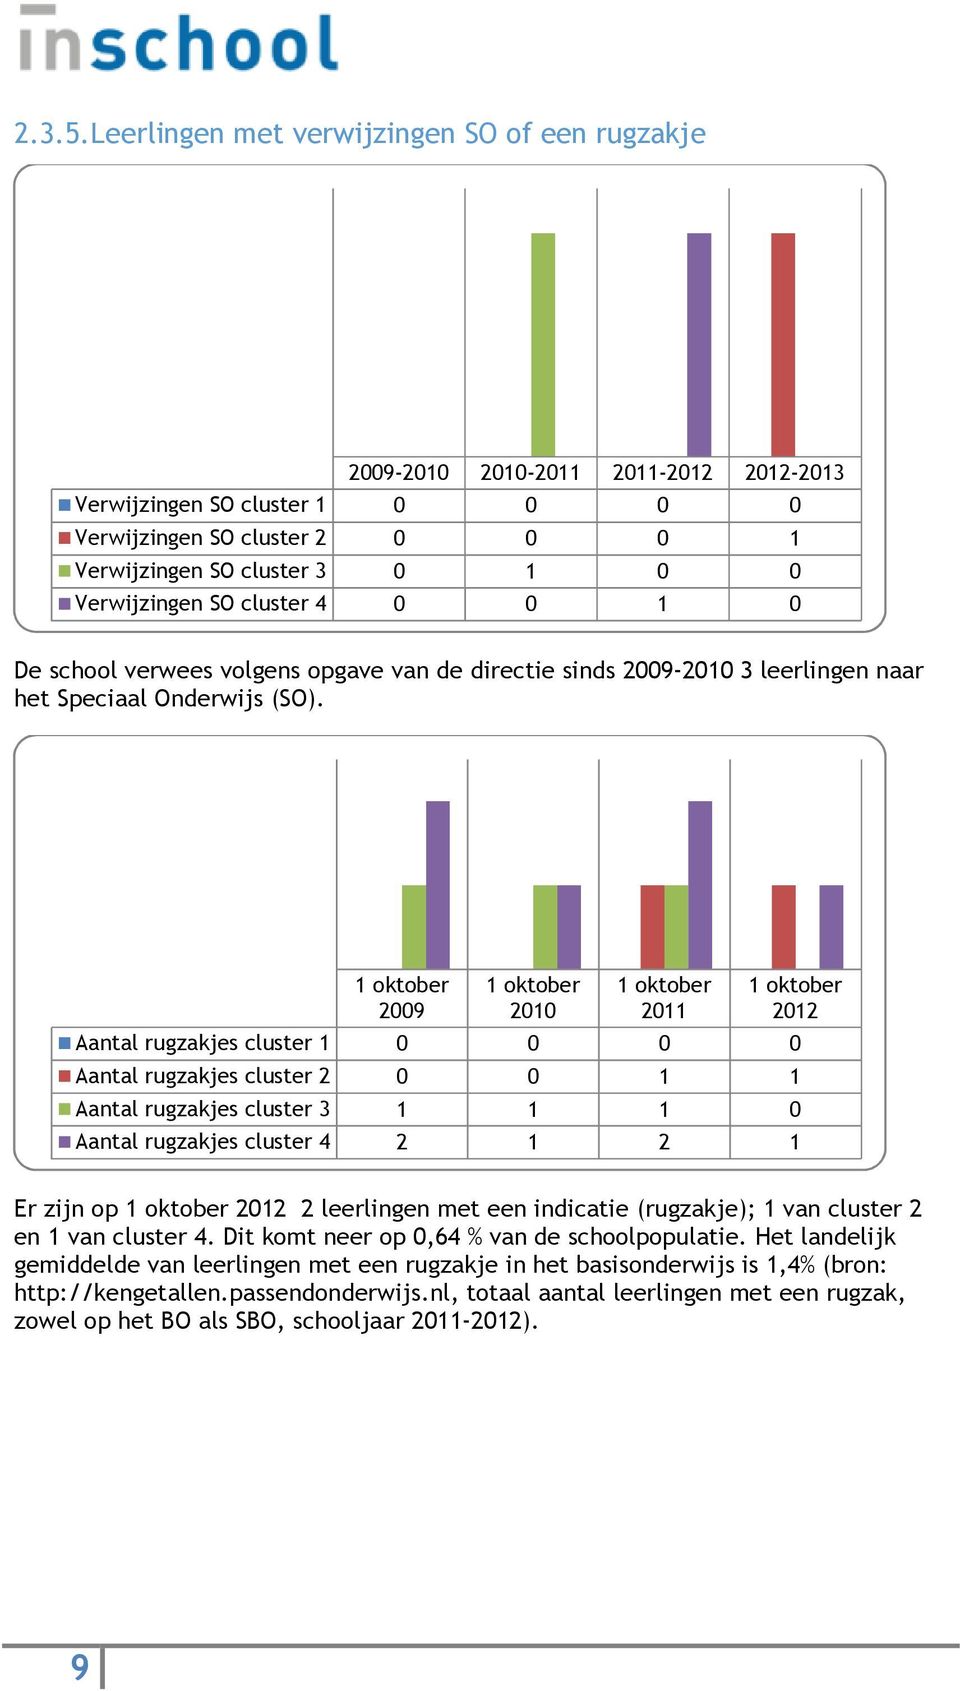 Verwijzingen SO cluster 4 0 0 1 0 De school verwees volgens opgave van de directie sinds 2009-2010 3 leerlingen naar het Speciaal Onderwijs (SO).